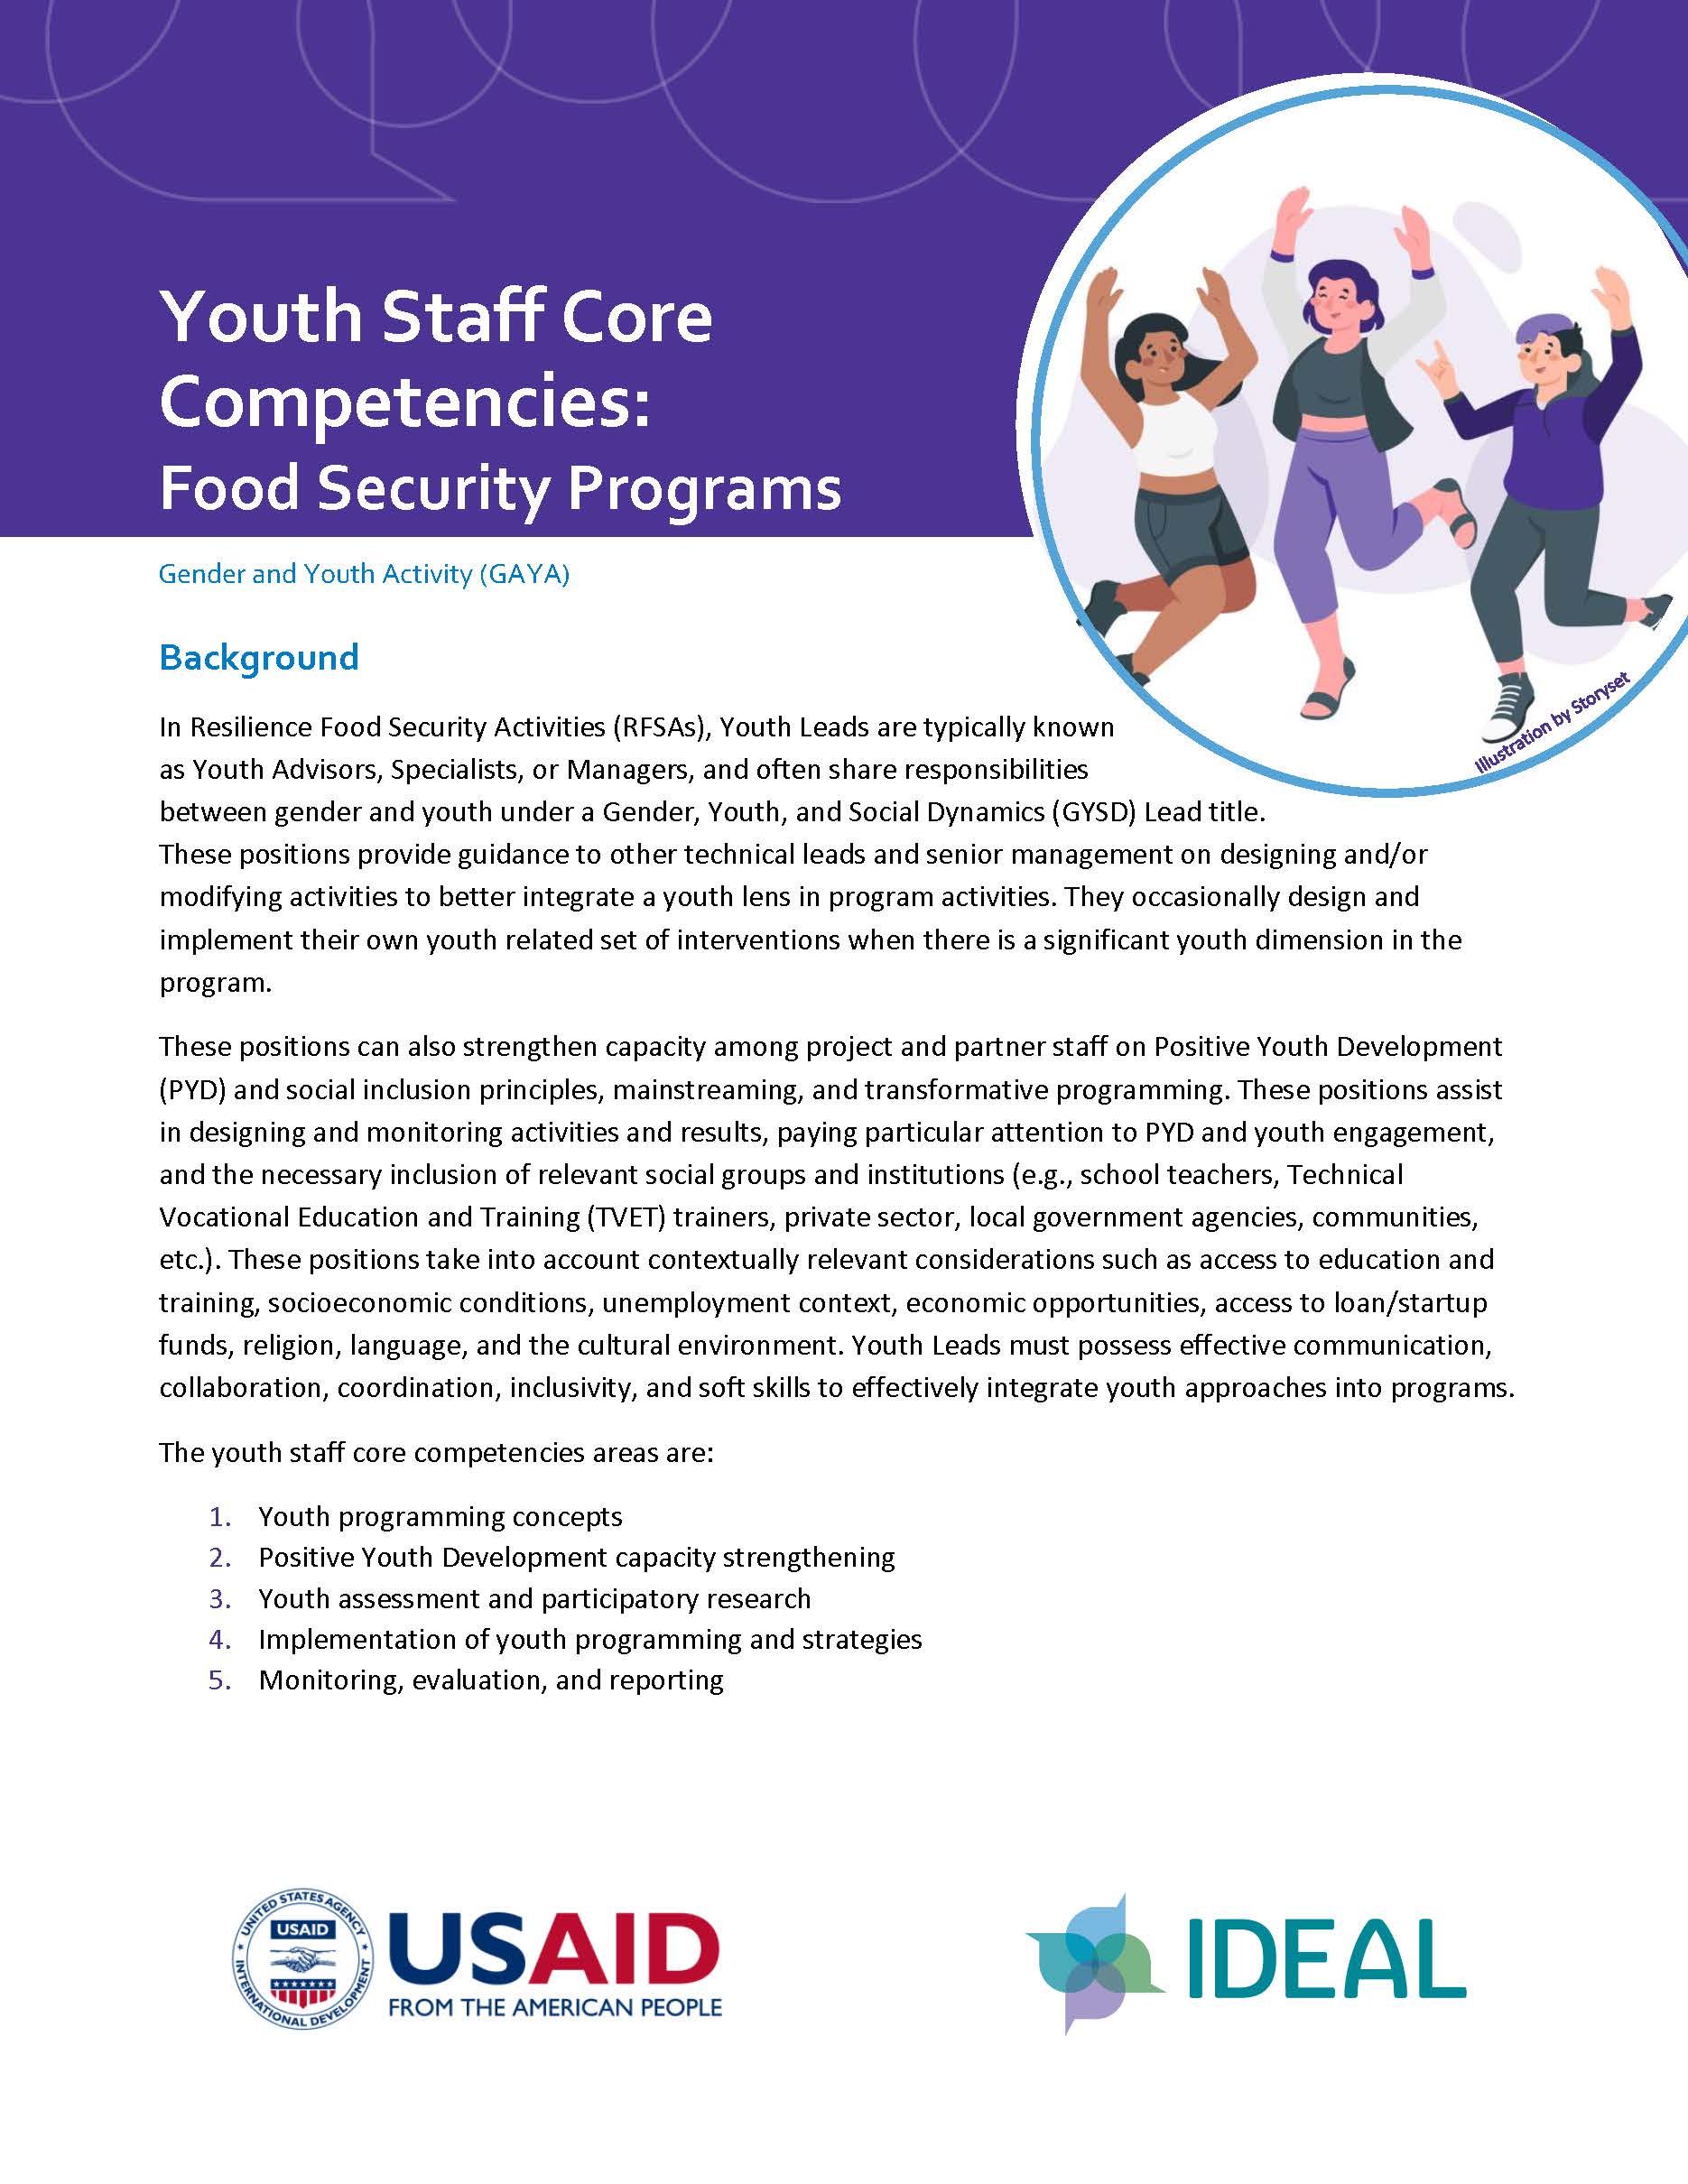 Page de couverture du rapport, intitulée « Compétences de base du personnel de jeunesse : programmes de sécurité alimentaire » avec un graphique représentant trois personnes sautant. L'autre texte de la page n'est pas visible.